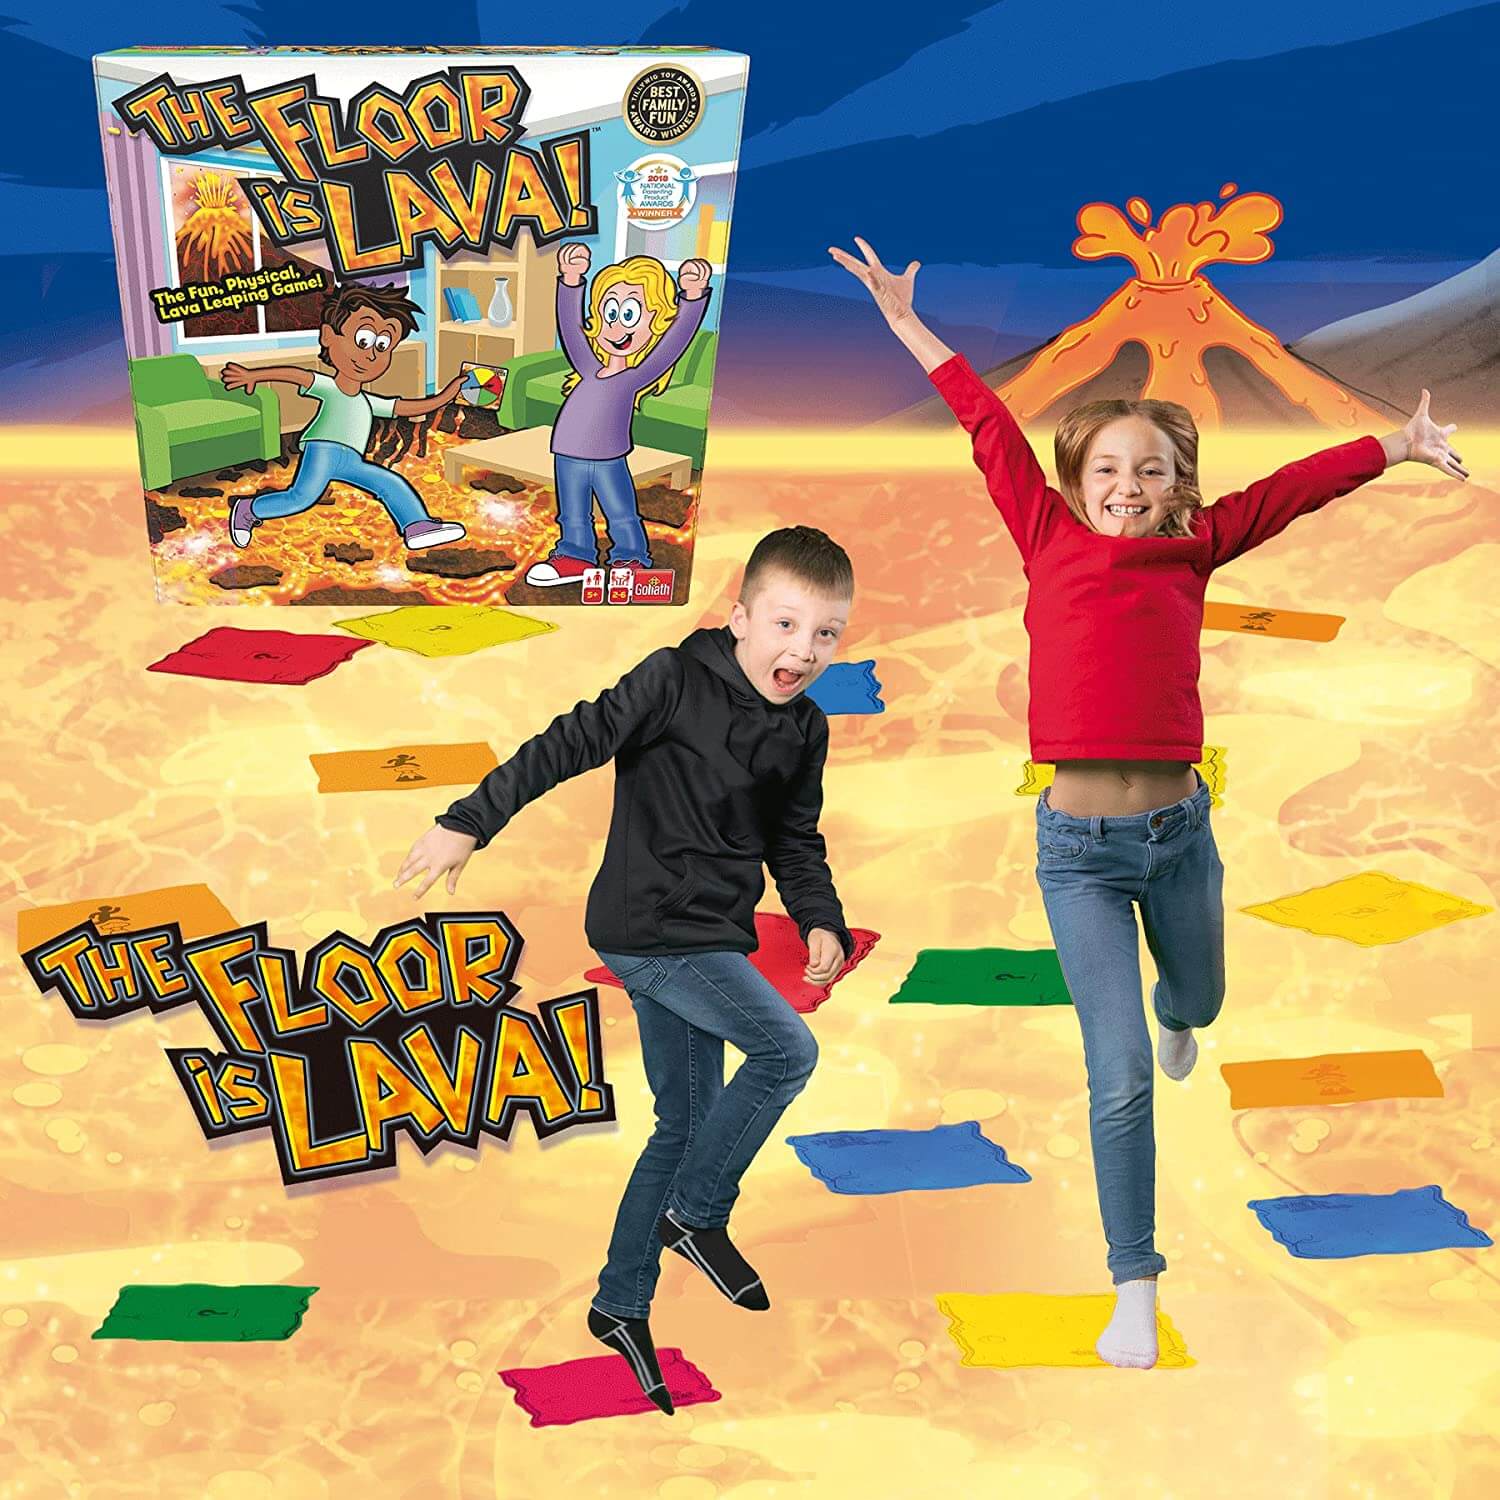 Kids enjoying Floor is Lava (ML) - Vivid Golaith Game for children - Imaginative game for kids